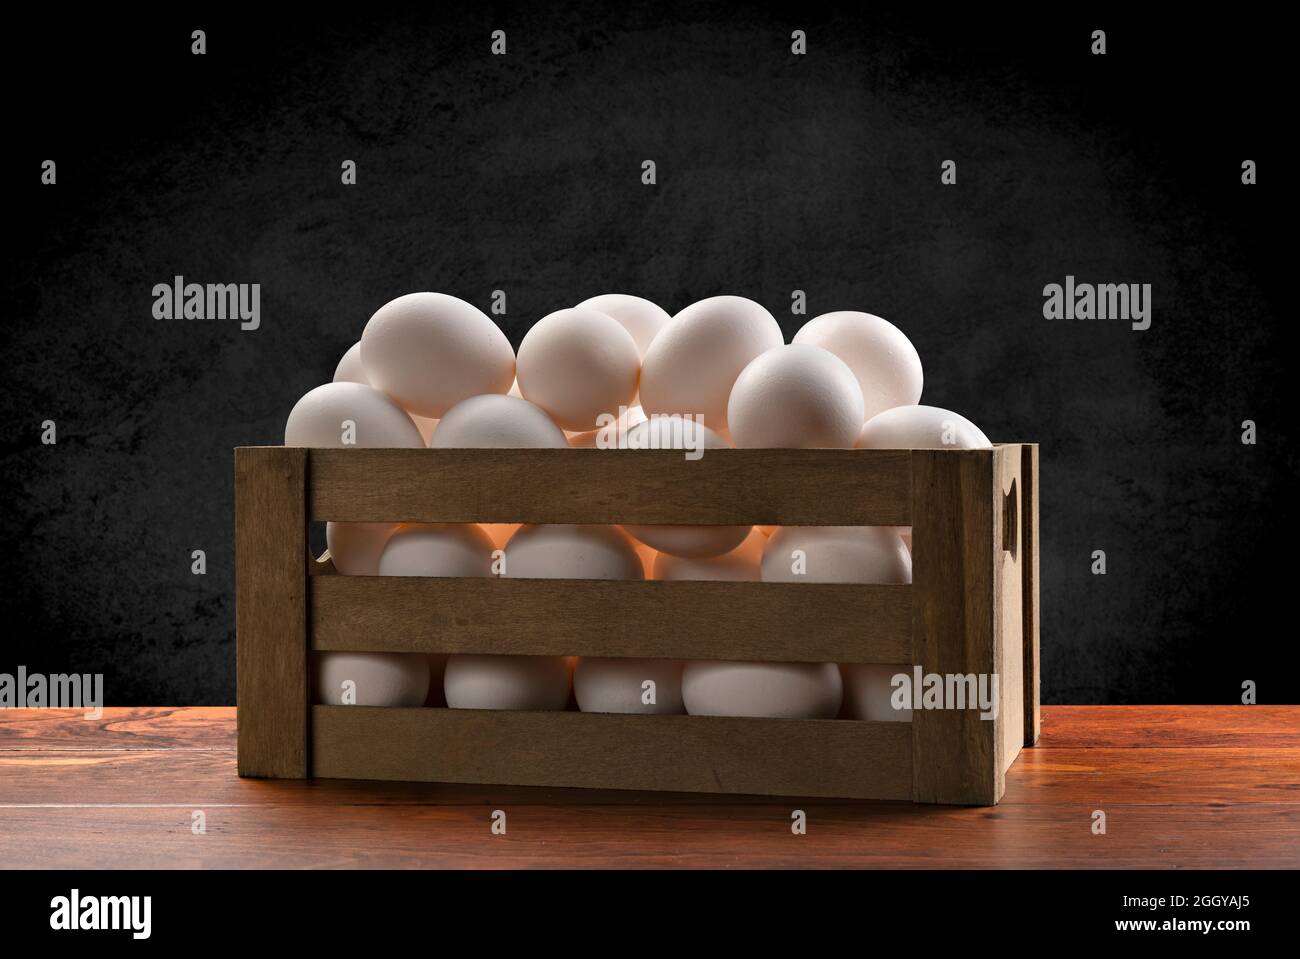 Una pequeña caja marrón de madera de huevos blancos recién recogidos encima de una mesa de teca y enmarcada por un fondo negro sutil, moteado. Foto de stock